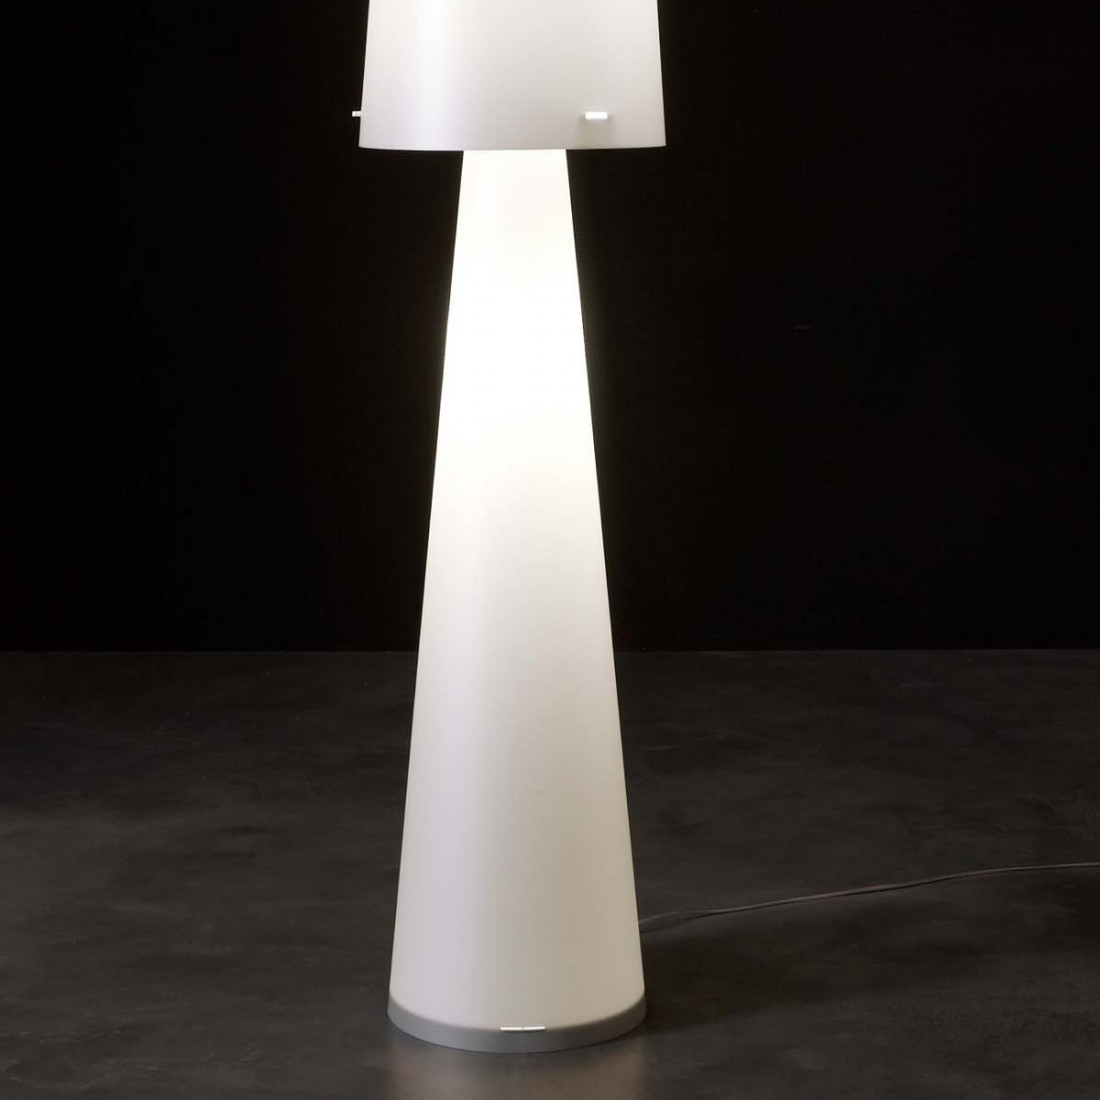 Piantana EM-DIVA CL 435 E27 LED H140 CM polypropylene bianco perla lampada terra moderna interno